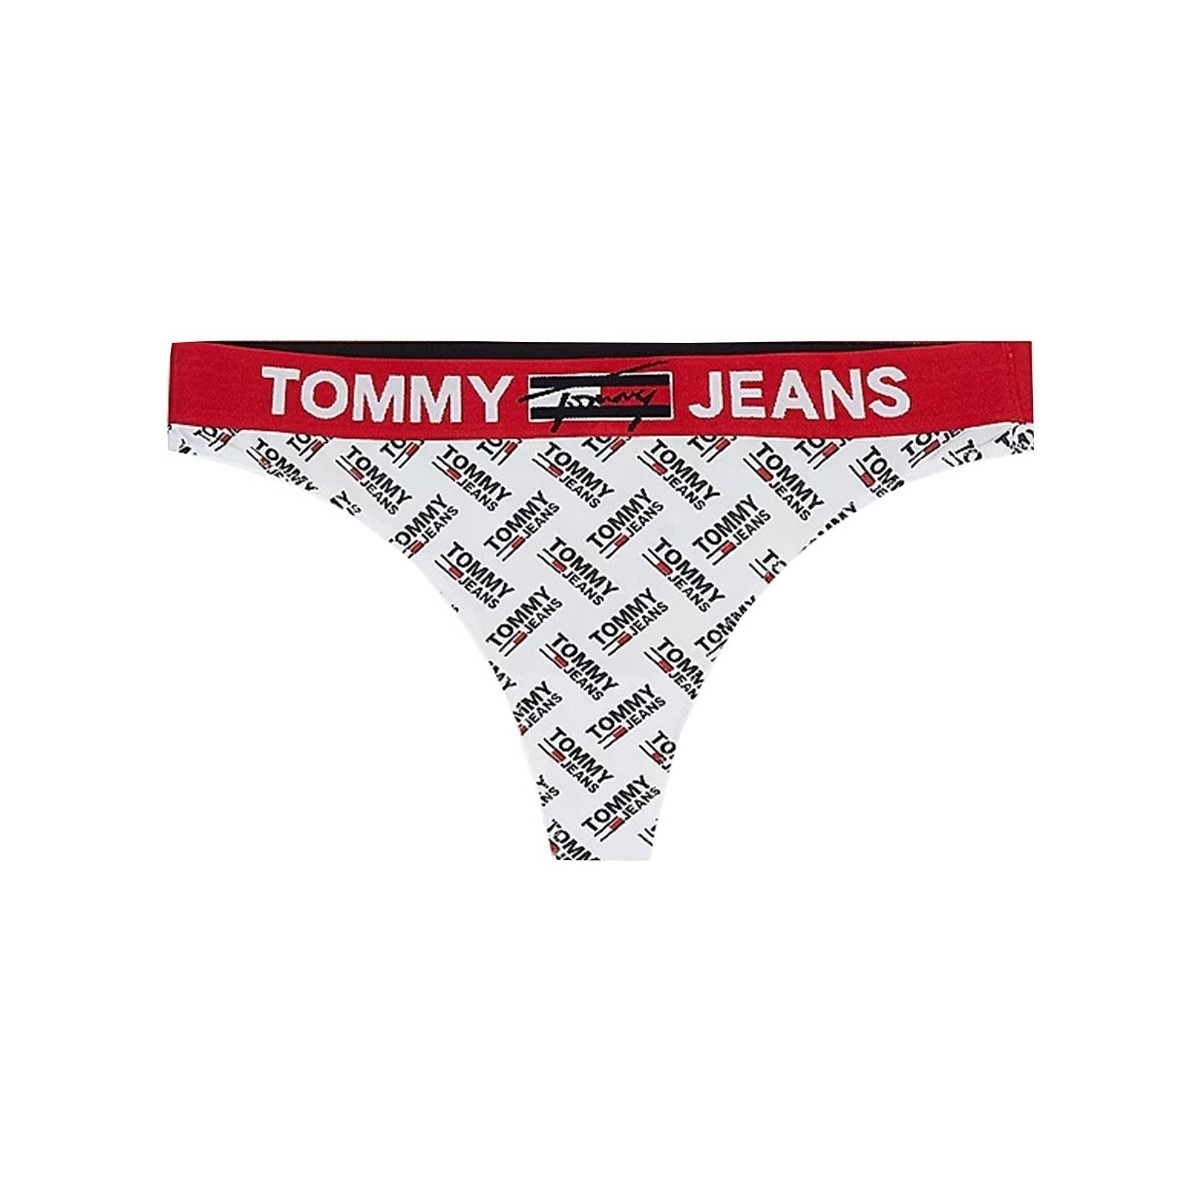 Sous-vêtements Femme Culottes & slips Tommy Jeans String  ref 53300 0NR Multicolore Multicolore